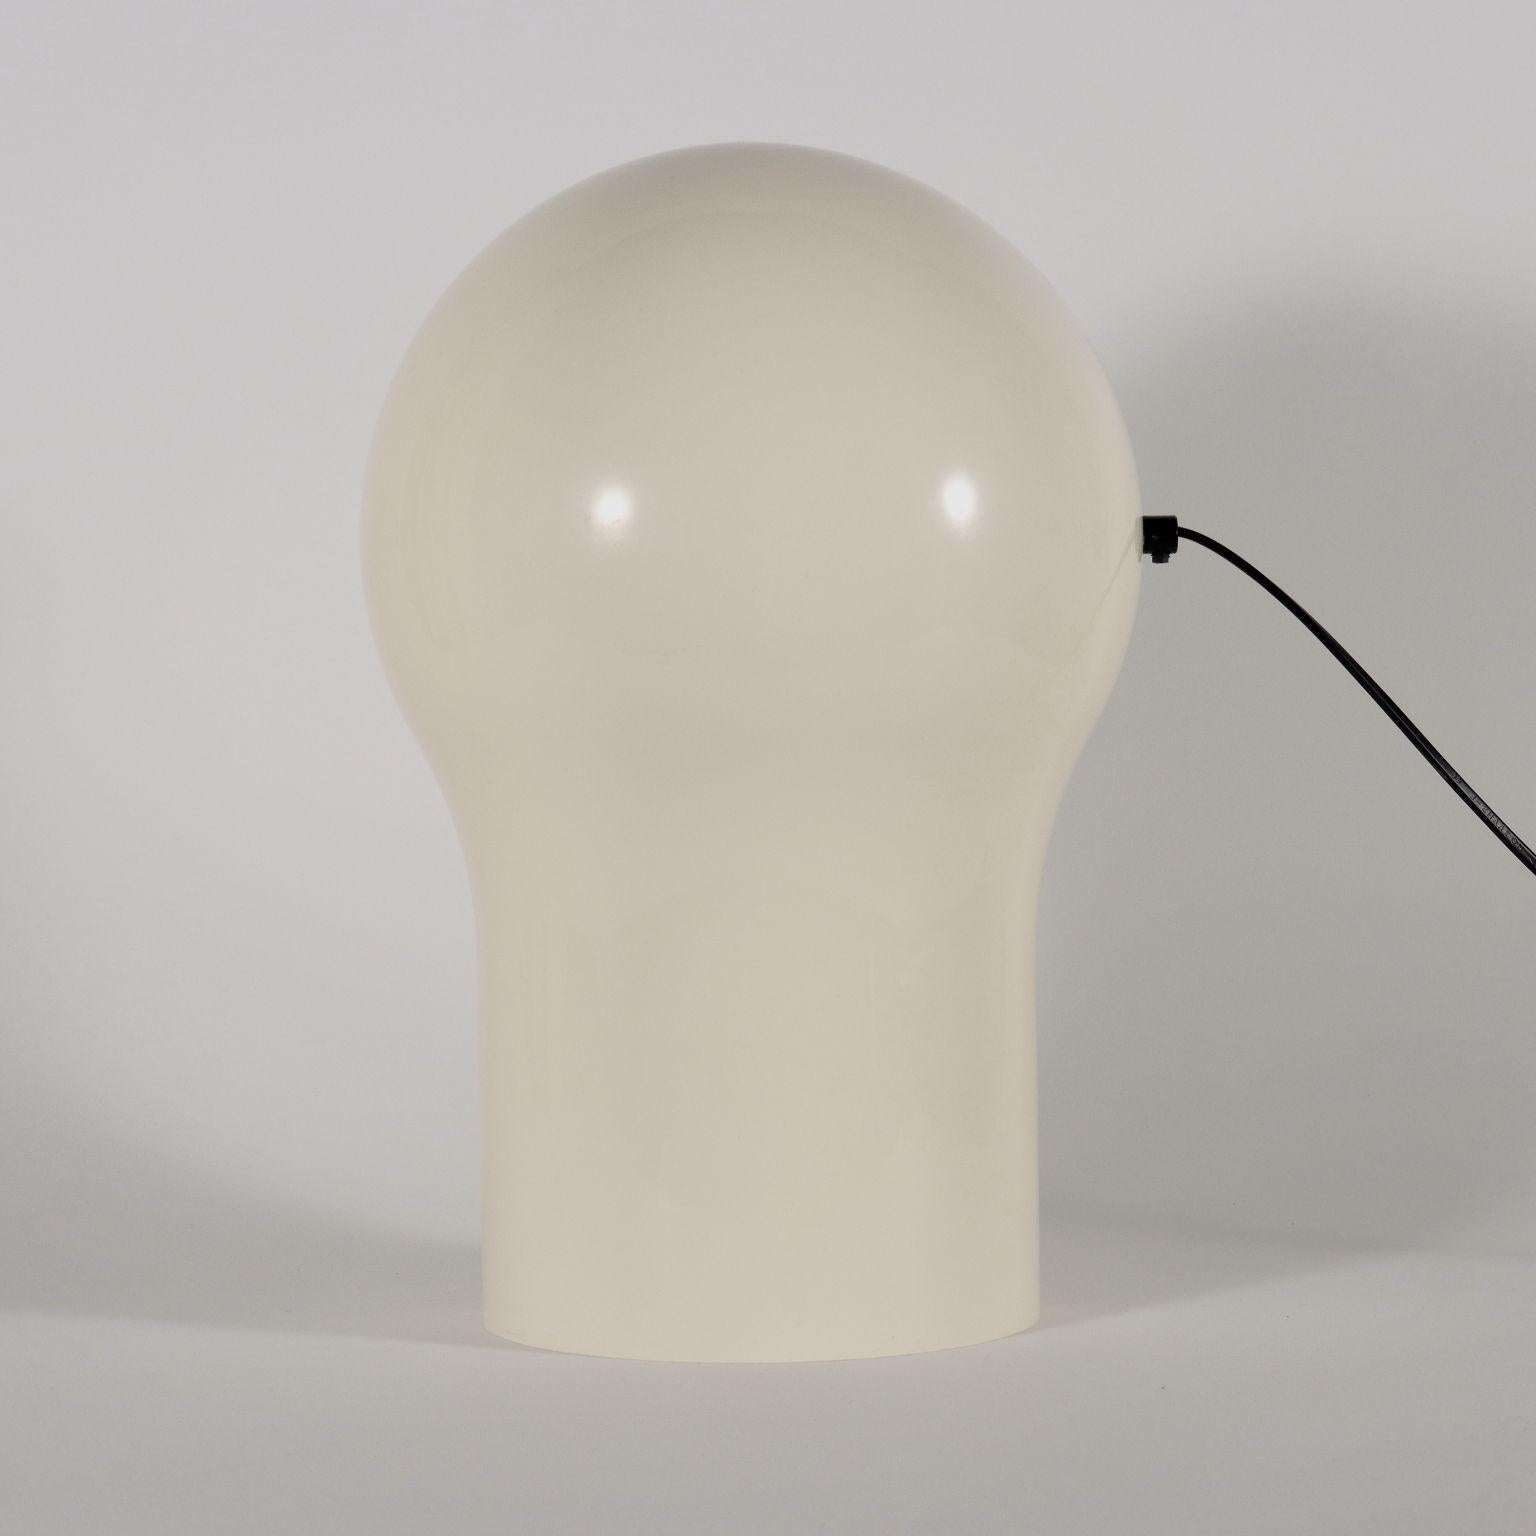 20th Century Telegono Lamps by Vico Magistretti for Artemide, 1960s-70s